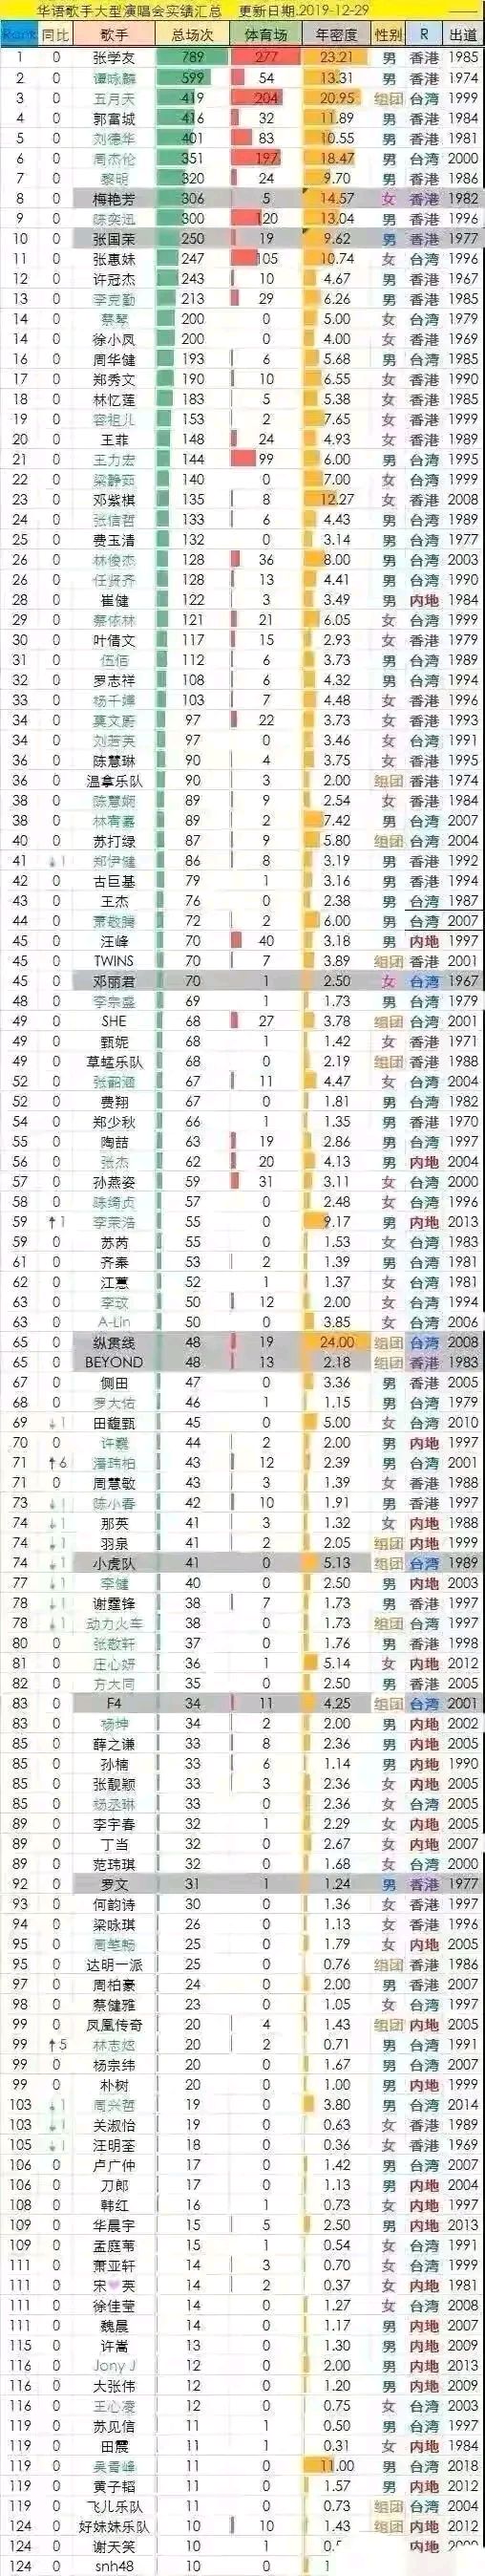 华语歌手演唱会总场次记录 这是最完整的演唱会数量榜,张学友是华人里